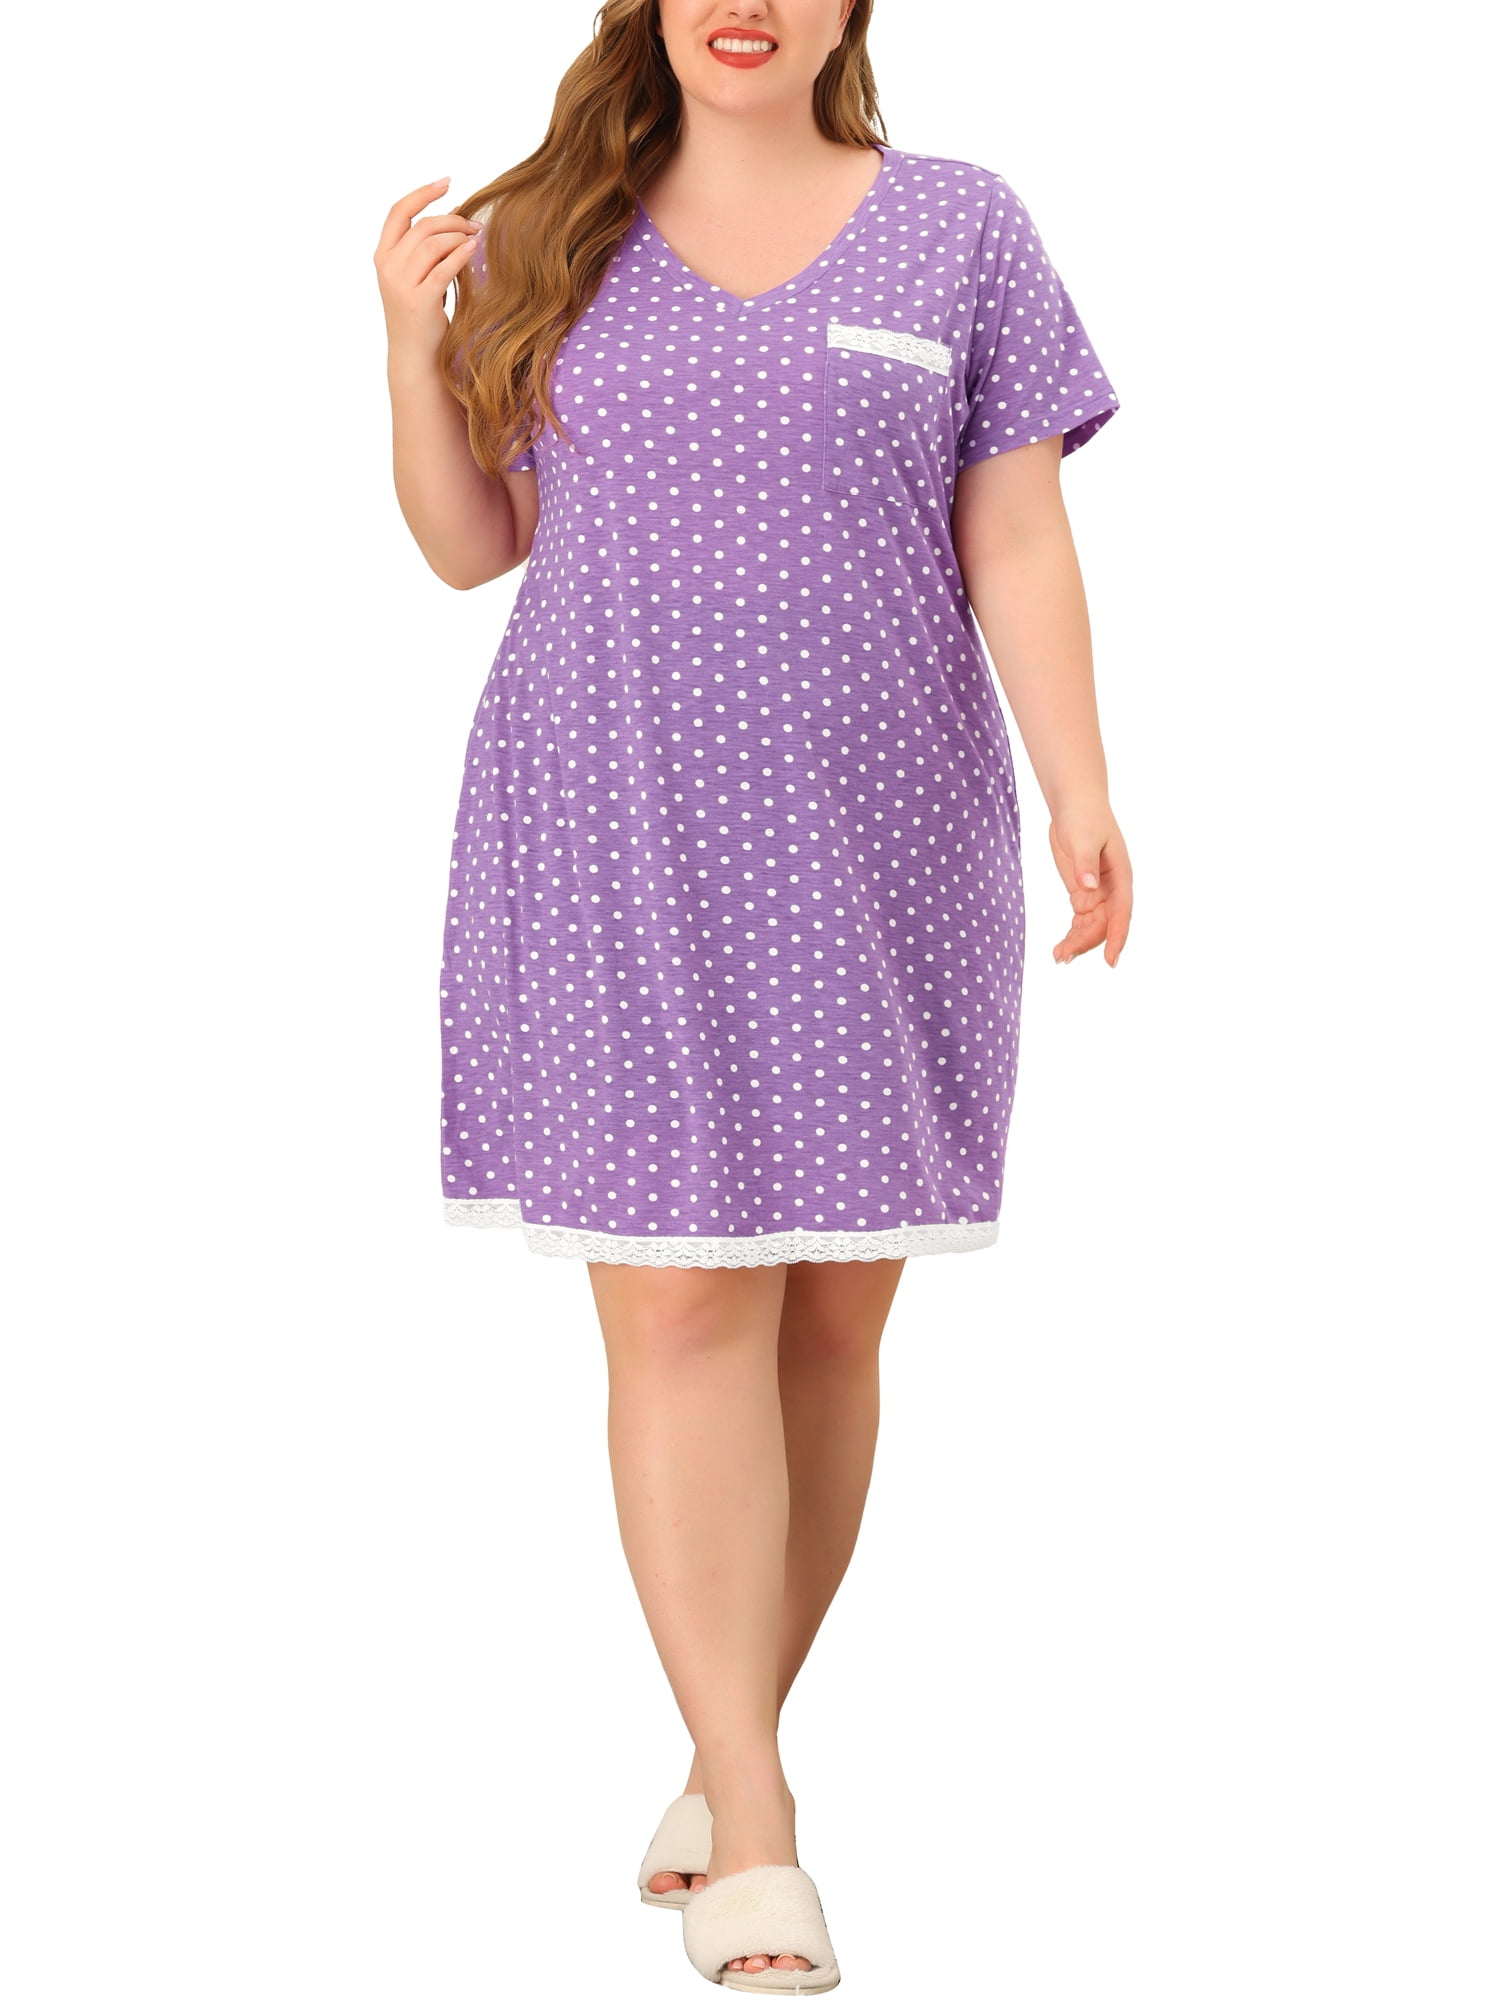 Unique Bargains Women's Plus Size 2 Piece Lace Polka Dots Matching